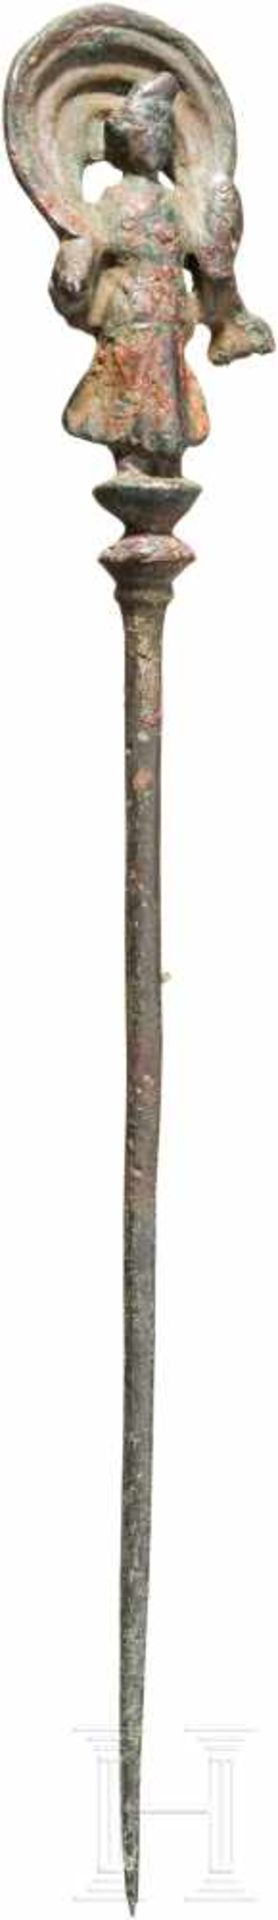 Nadel mit figürlicher Bekrönung, römisch, 1. - 3. Jhdt.Bronzenadel mit dekorativer figürlicher